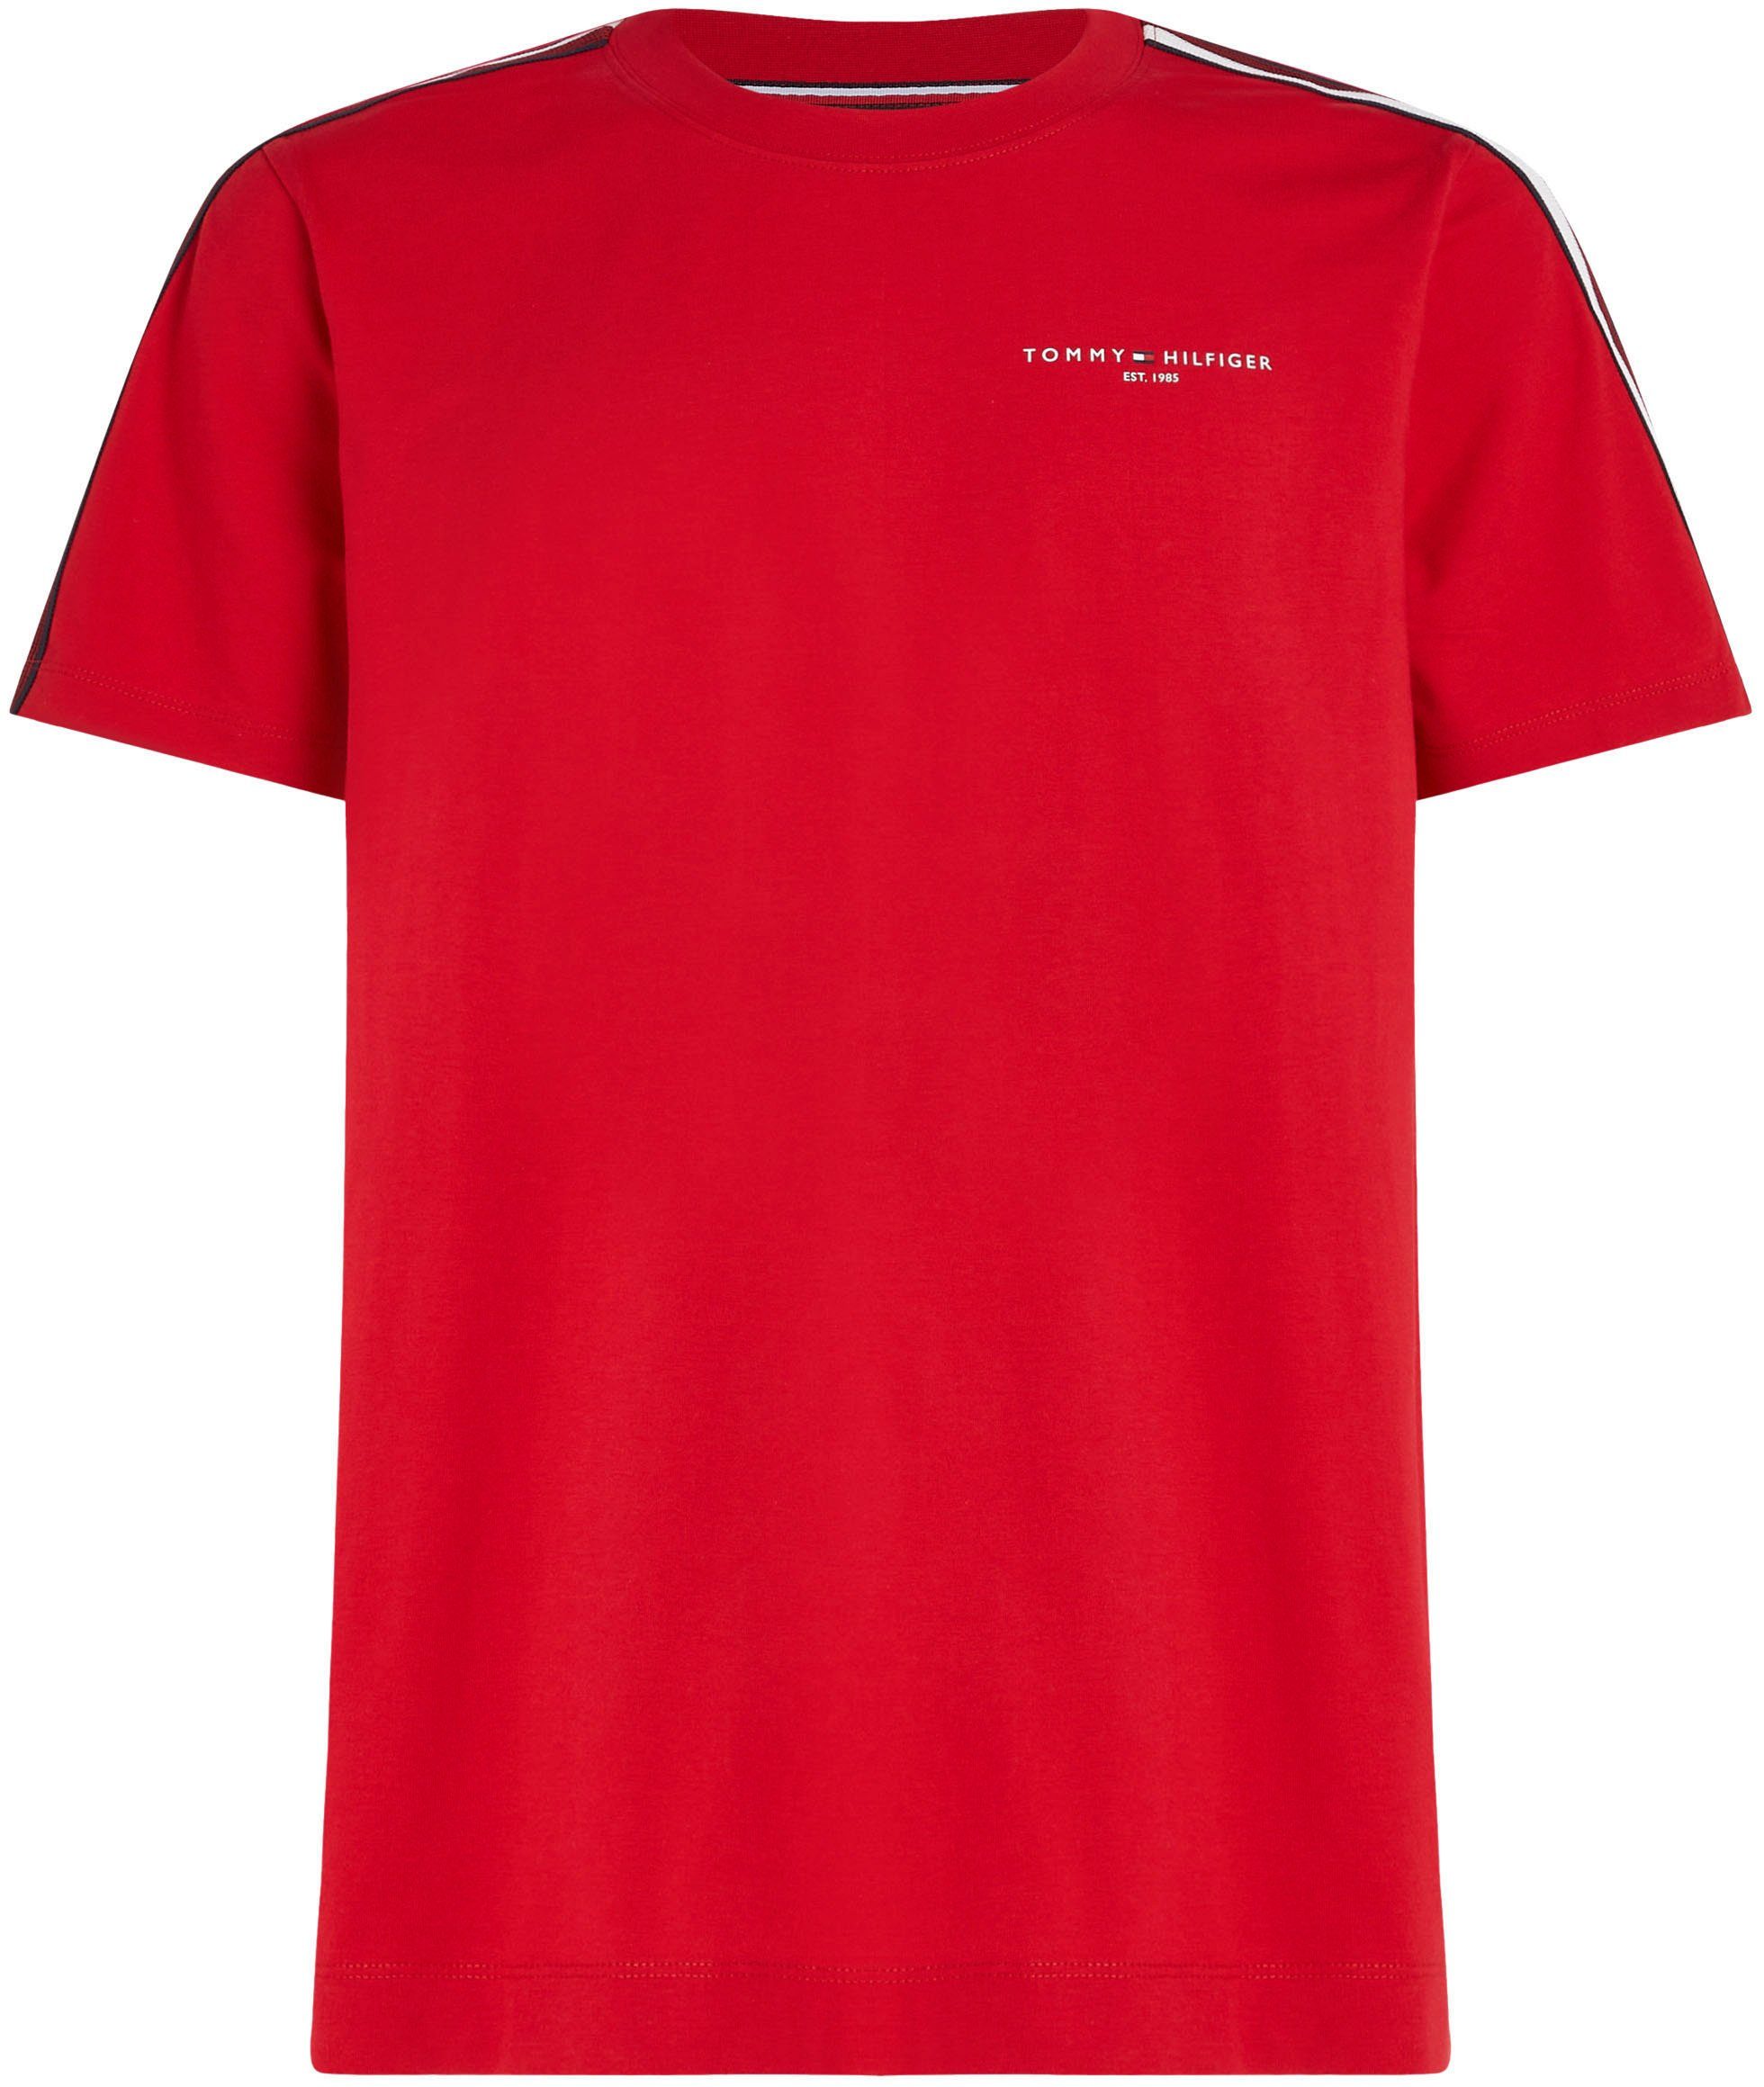 Ärmeln Rundhalsshirt Red mit GLOBAL PREP STRIPE Streifen an TEE in beiden Primary Tommy Hilfiger TH-Farben